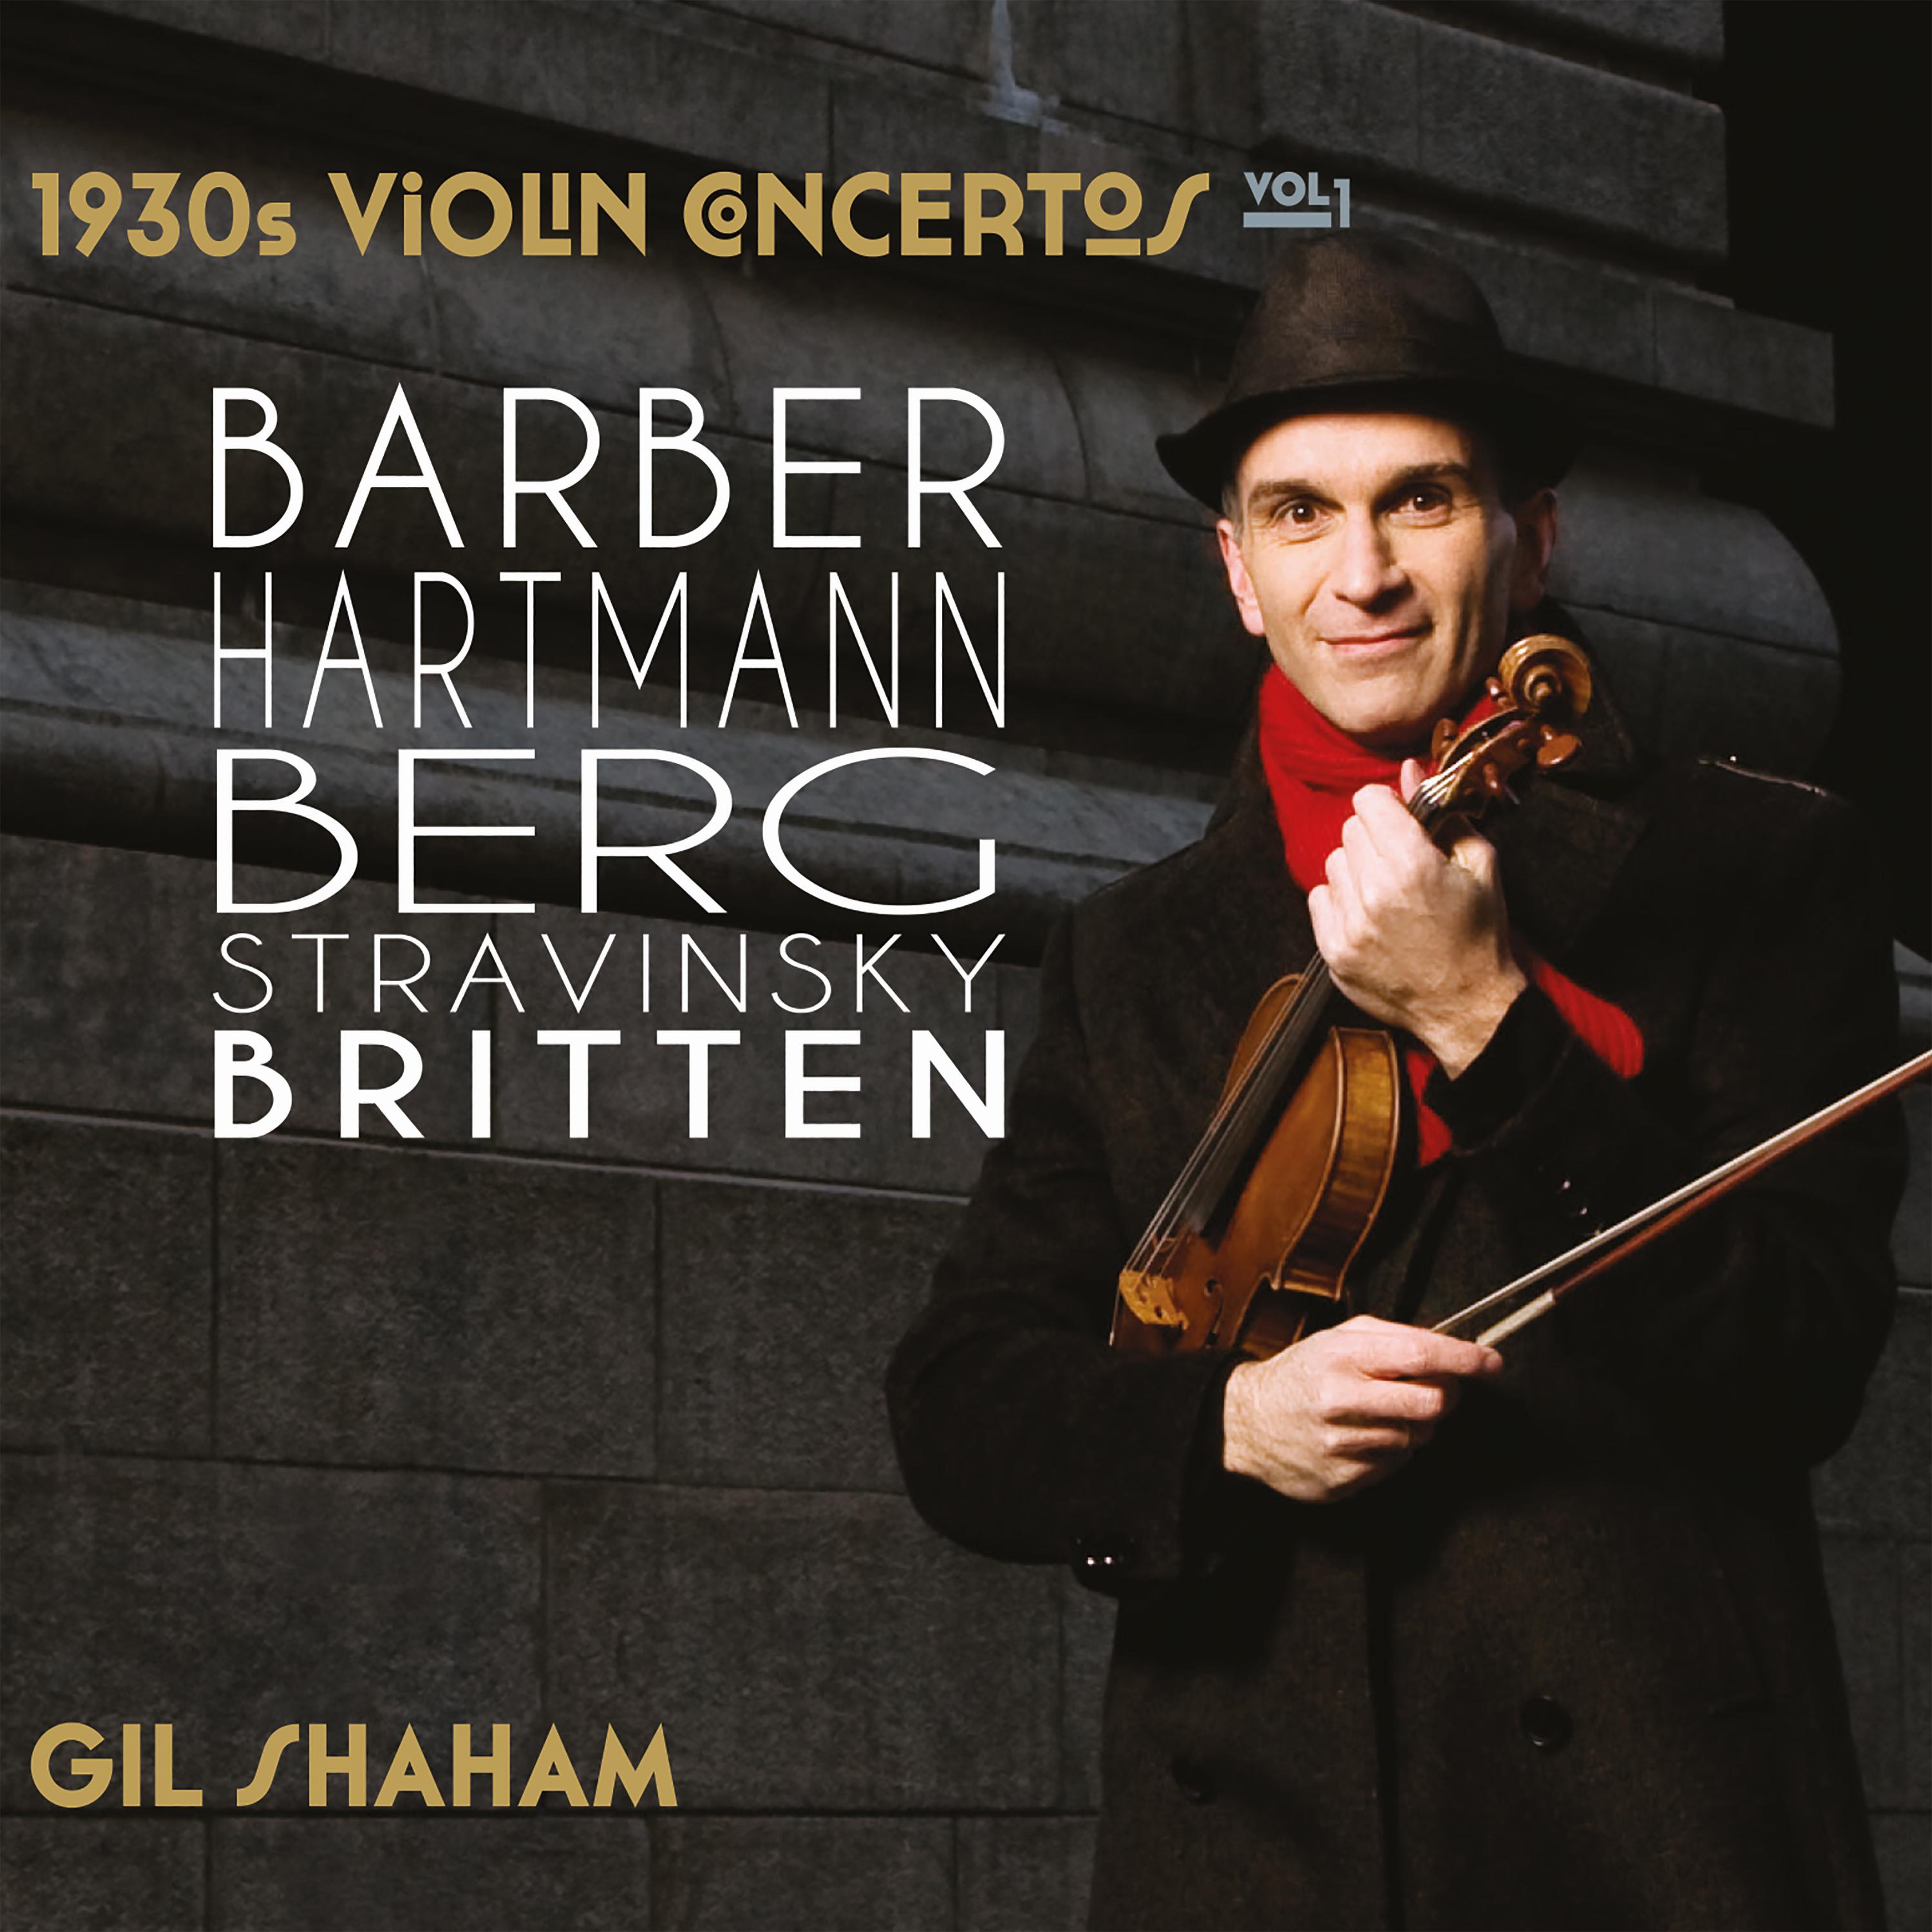 Violin Concerto: Ib. Allegretto